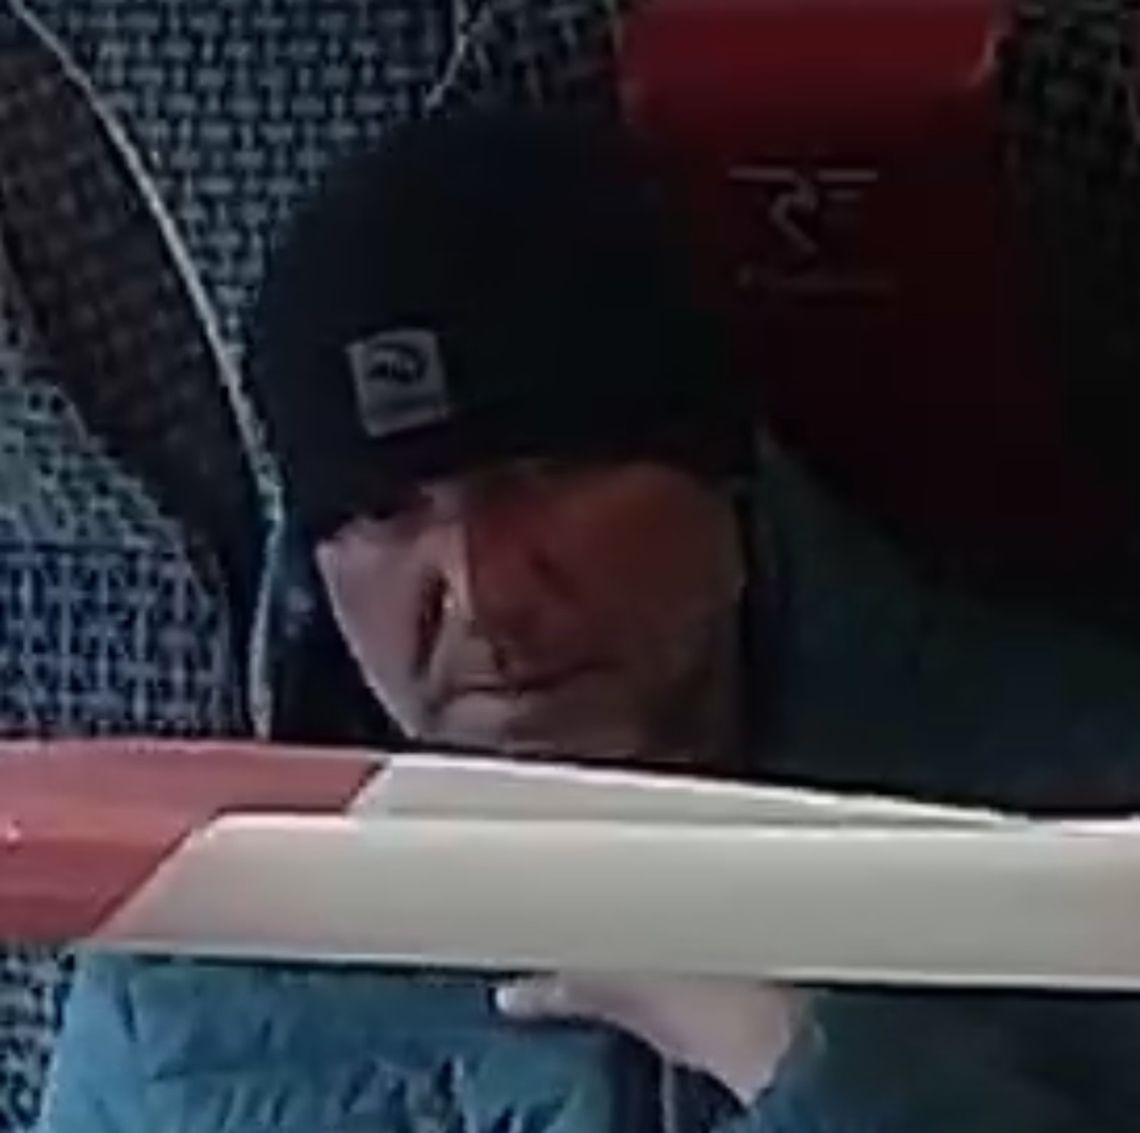 Poszukiwany mężczyzna ze zdjęcia. Wysiadł na stacji Włocławek-Brzezie